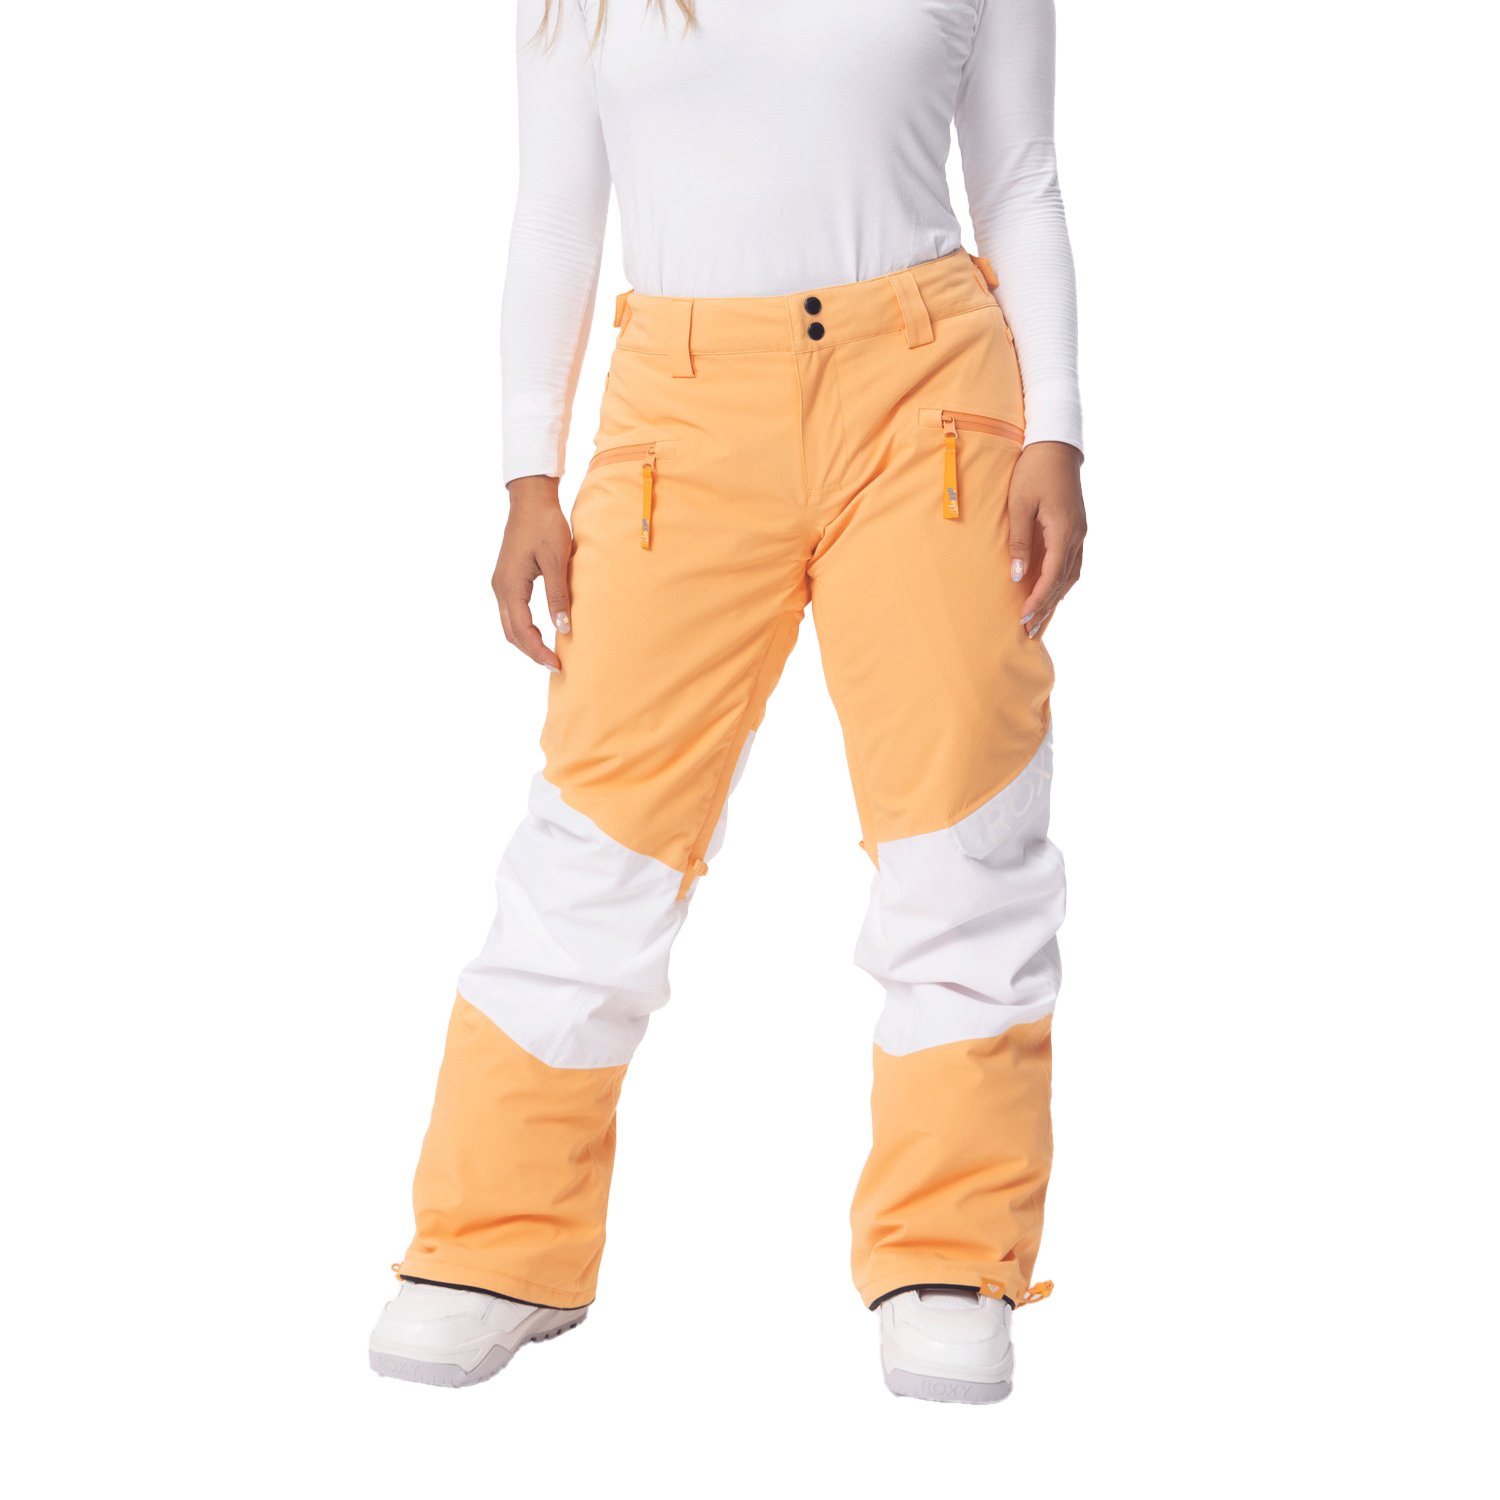 Roxy Rising High Kadın Snowboard Pantolonu - Turuncu - 1